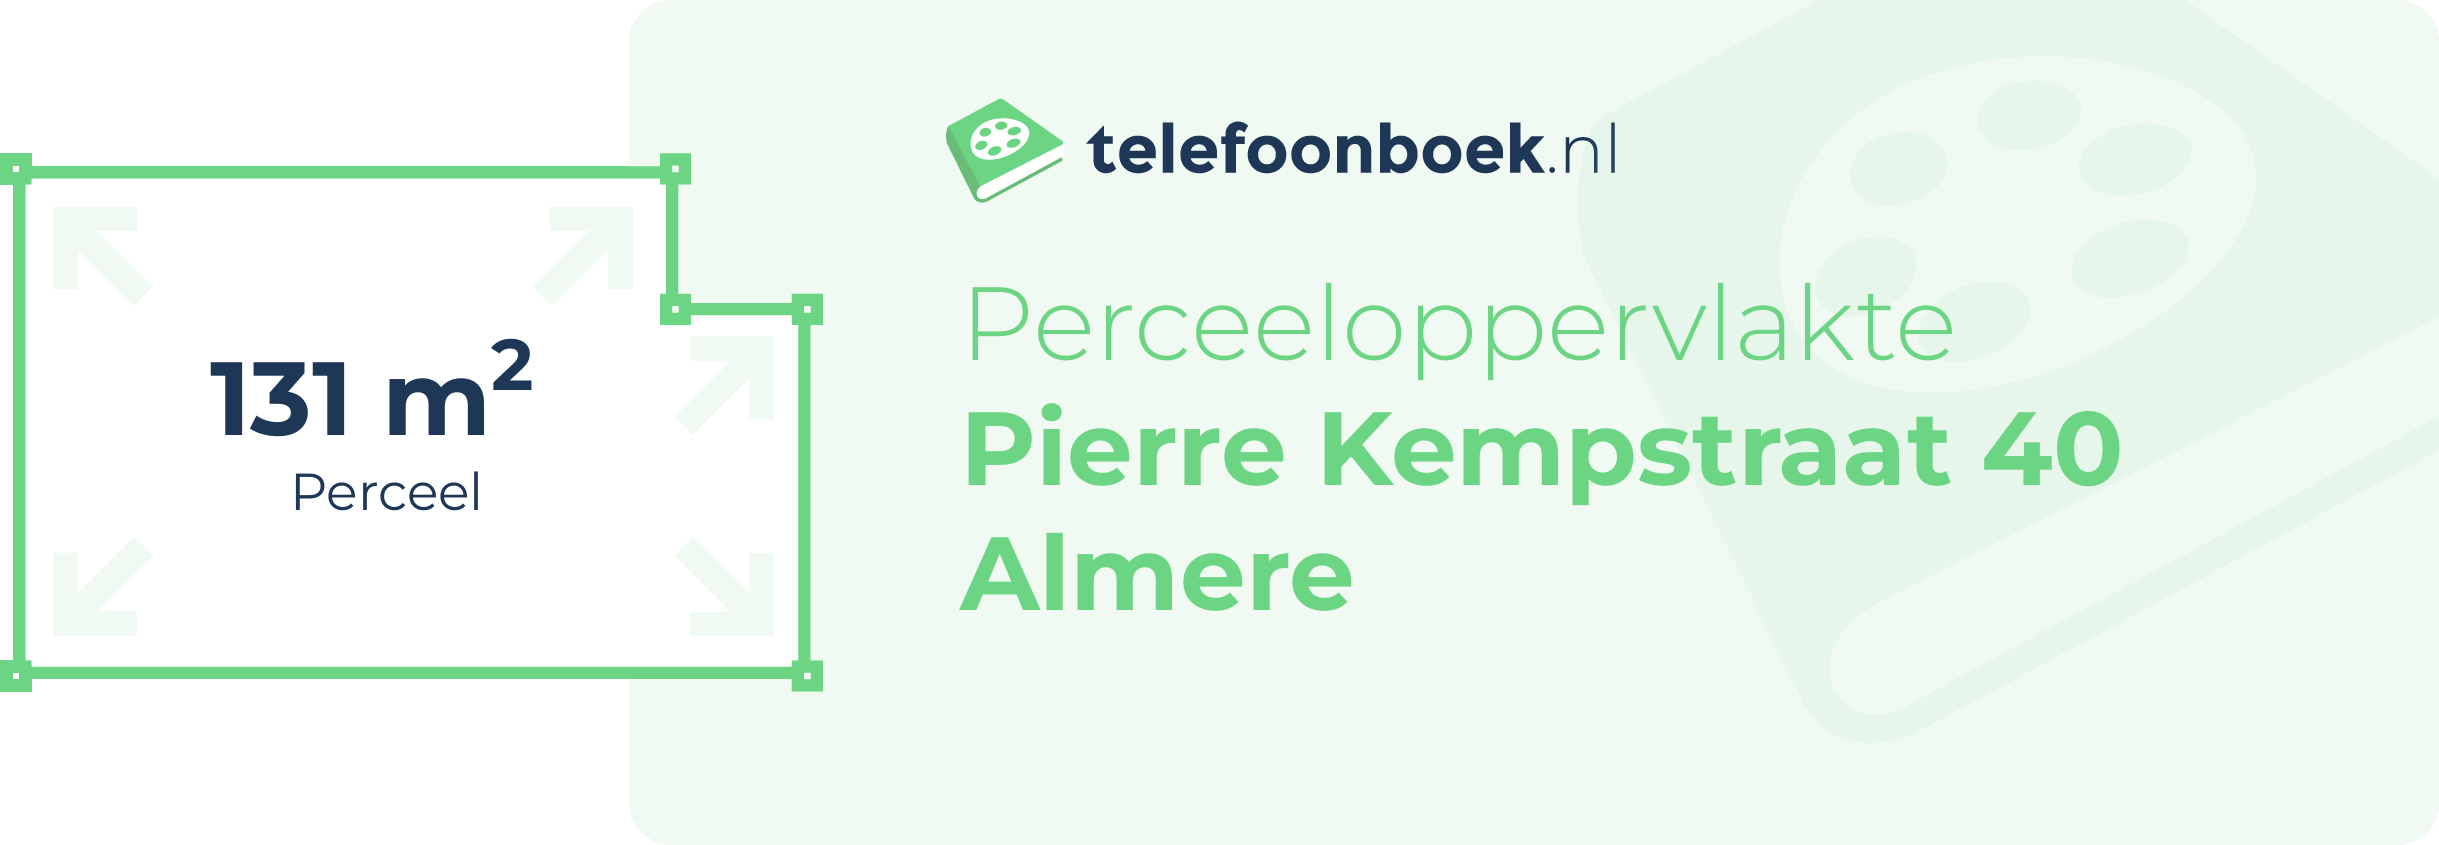 Perceeloppervlakte Pierre Kempstraat 40 Almere